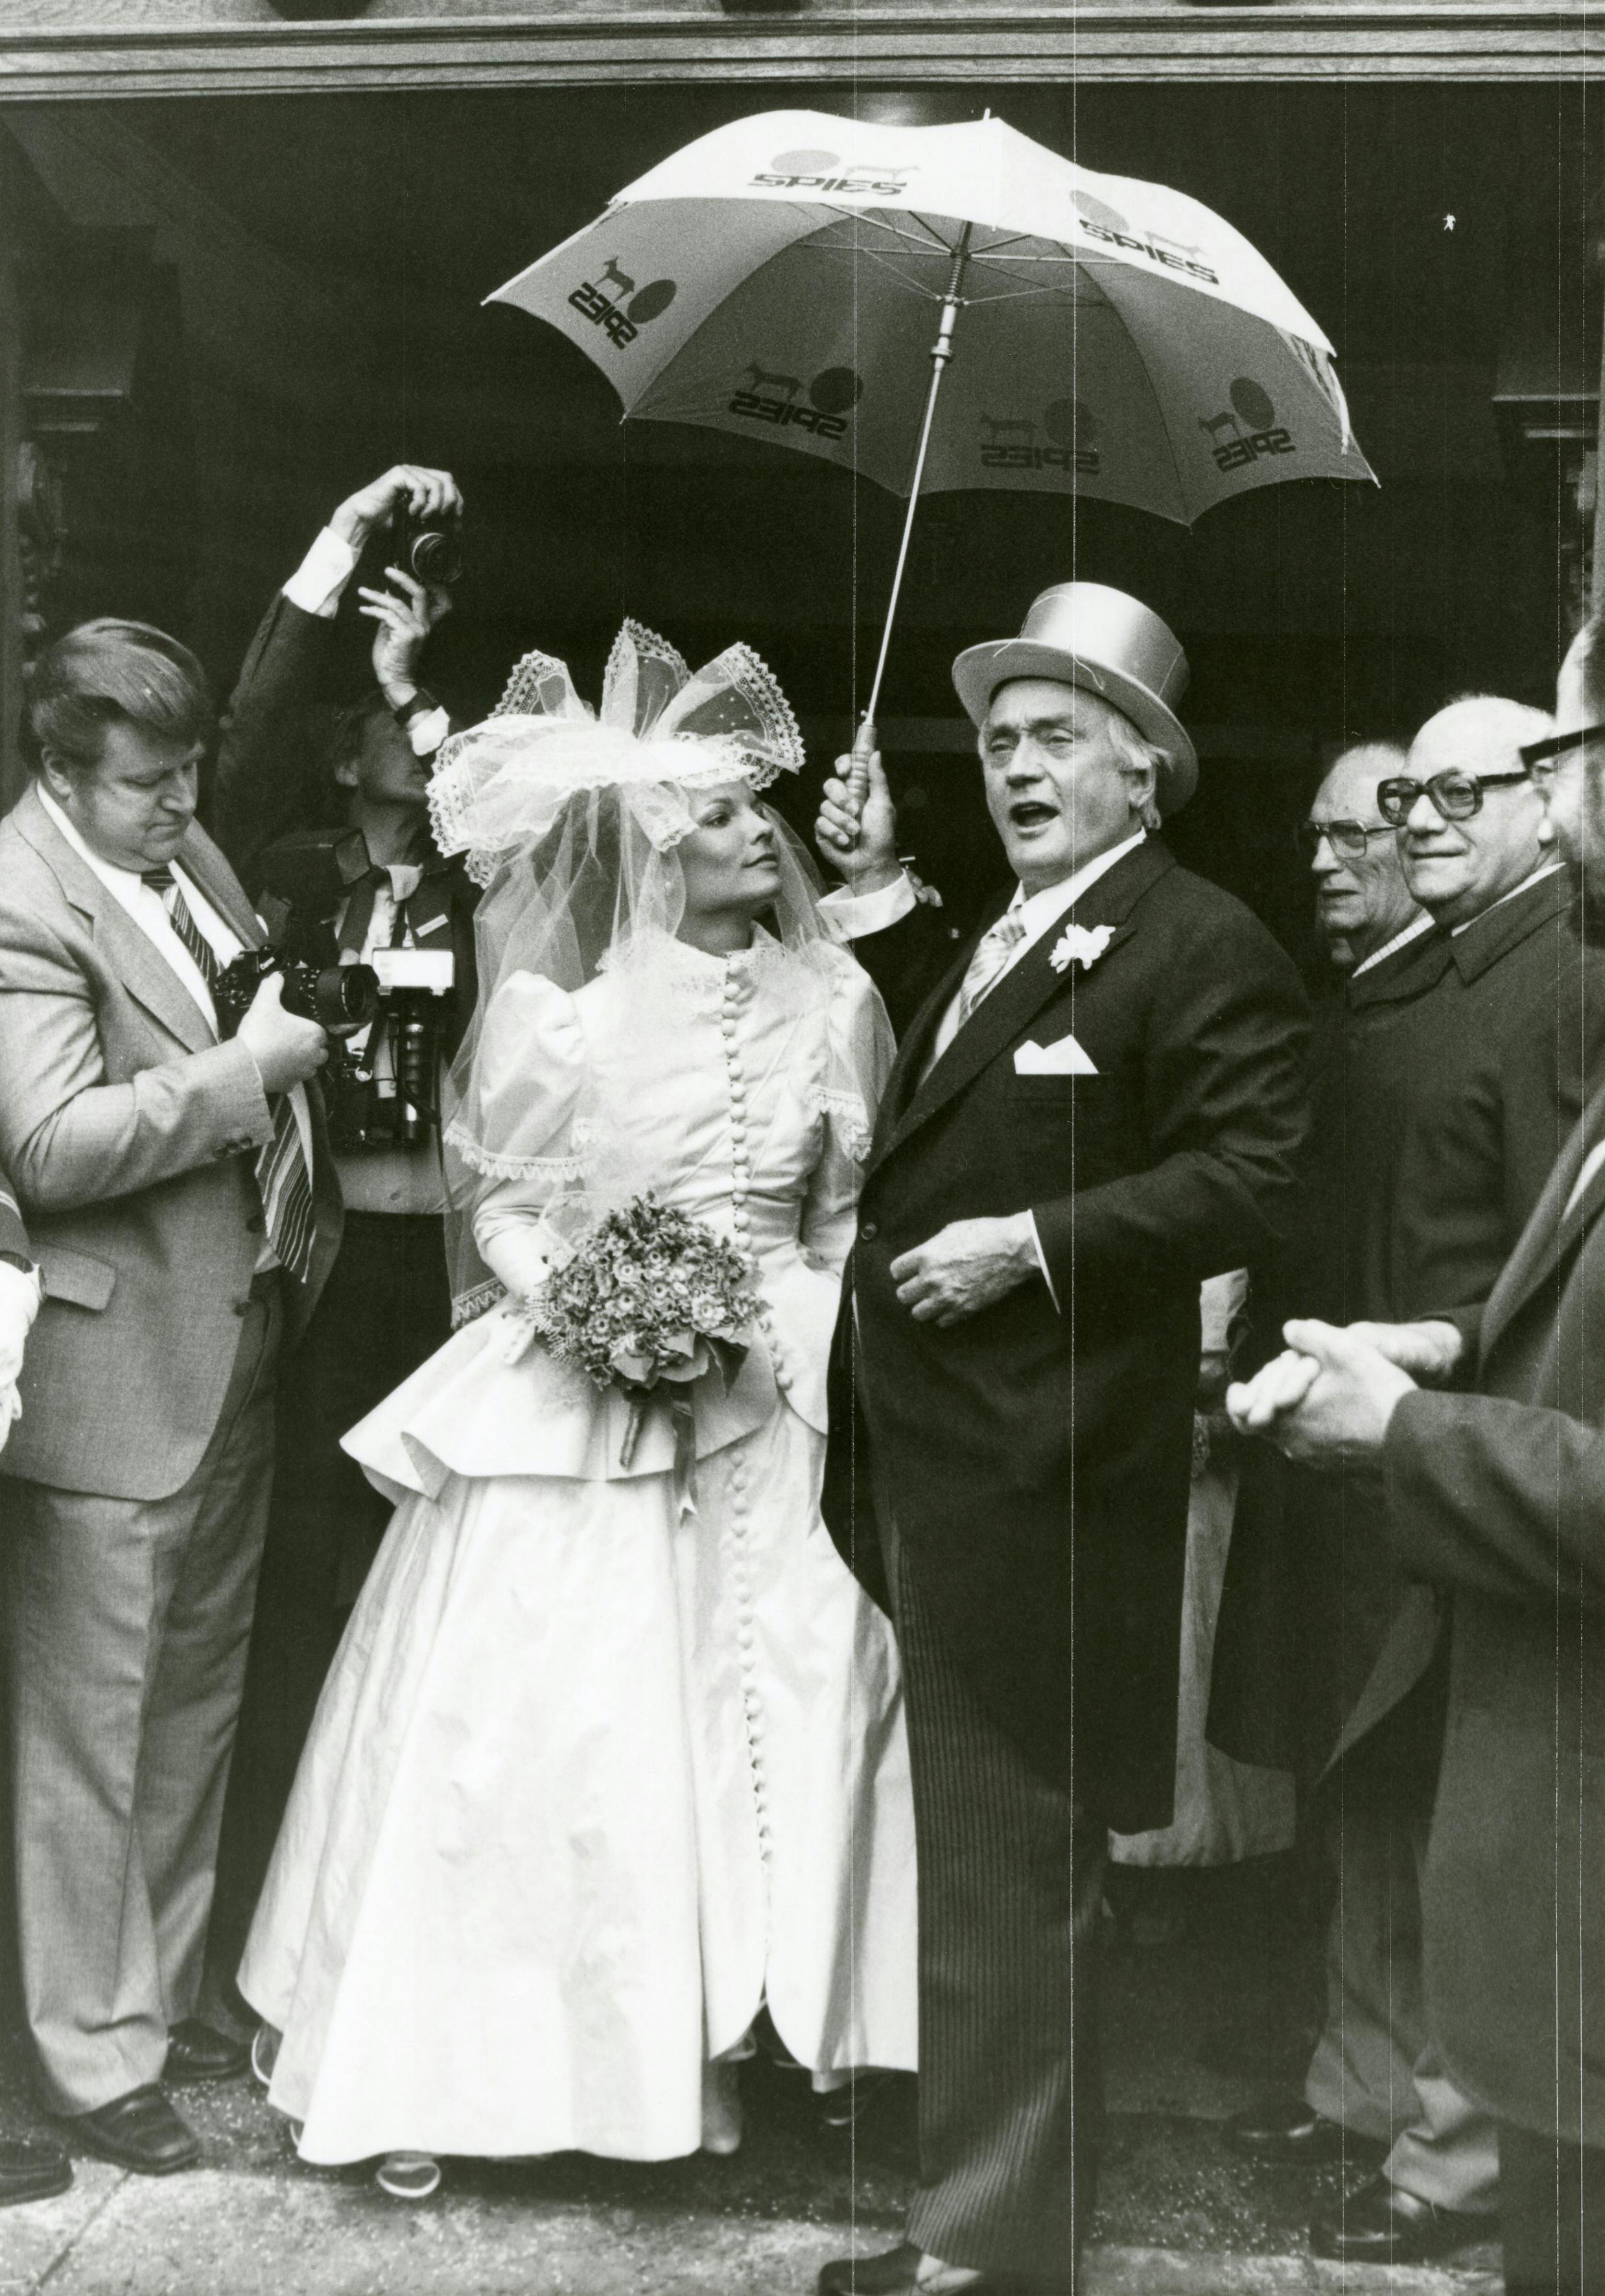 Rejsekongen Simon Spies gifter sig med den unge Janni Brodersen den 11. maj 1983 i Holmens Kirke i København.
